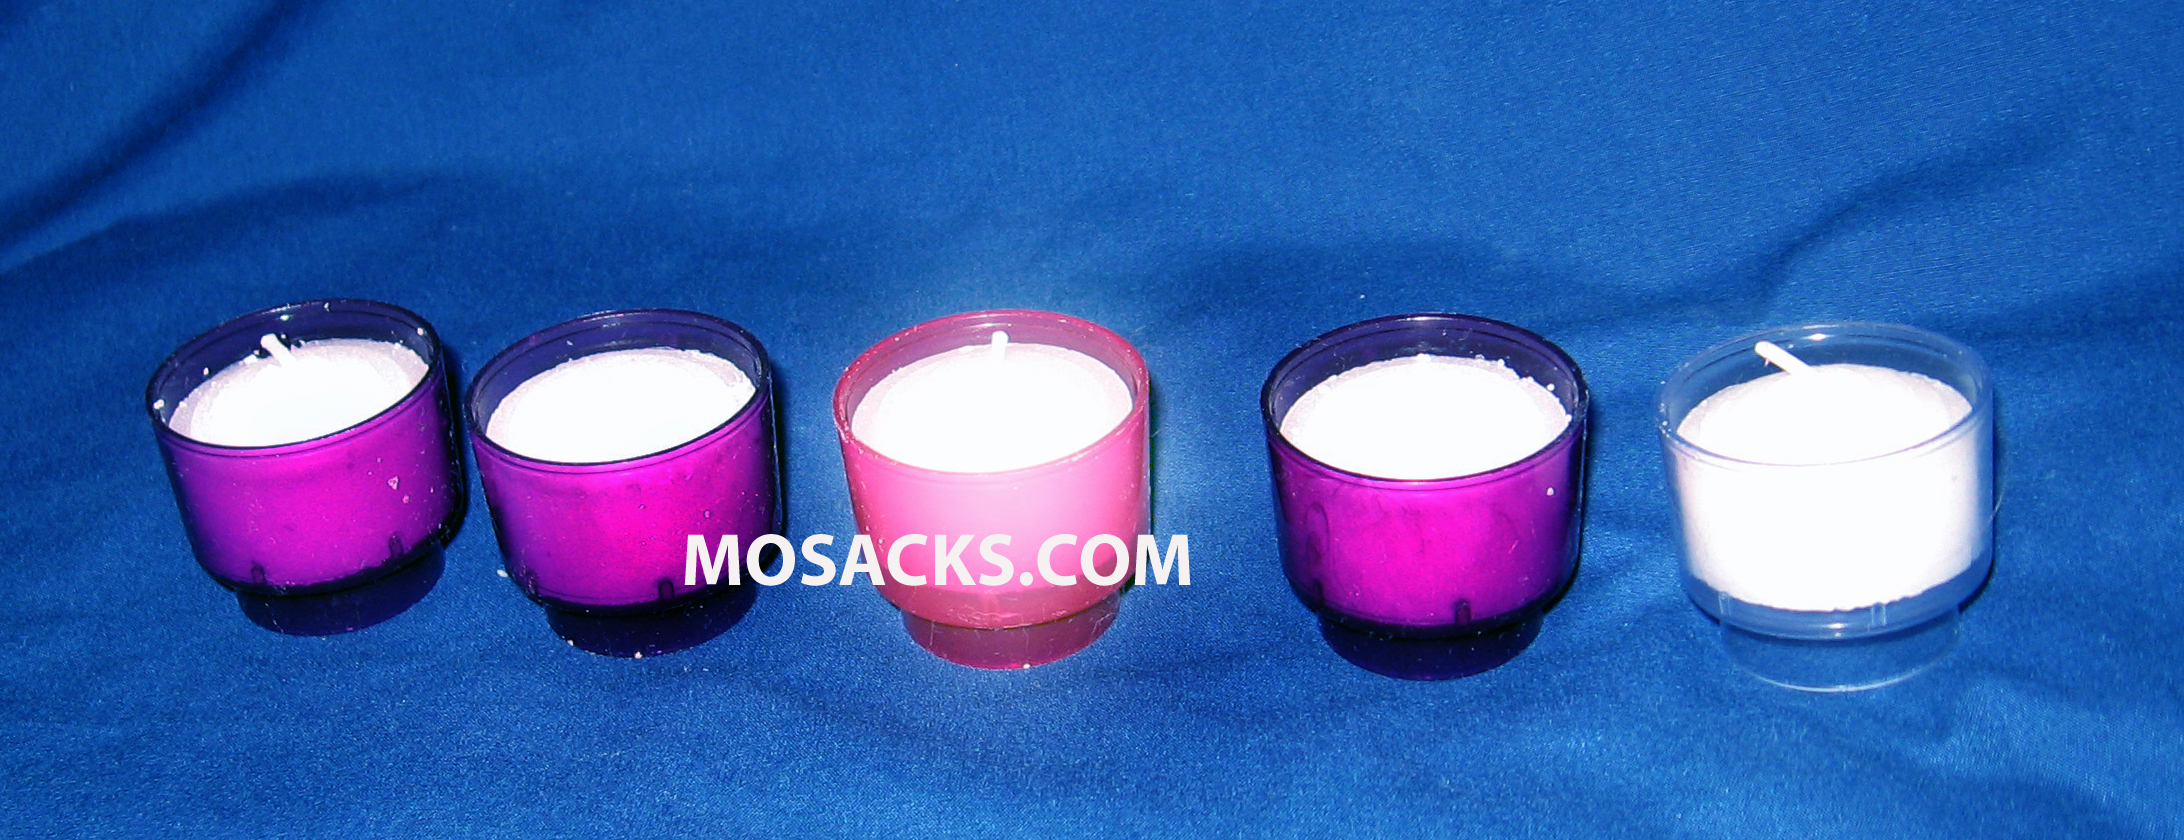 Tea Light Advent Candles Advent 4 Hour Disposable Votive Set 3 Purple, 1 Pink, 1 White 308-Advent Disposable Votives